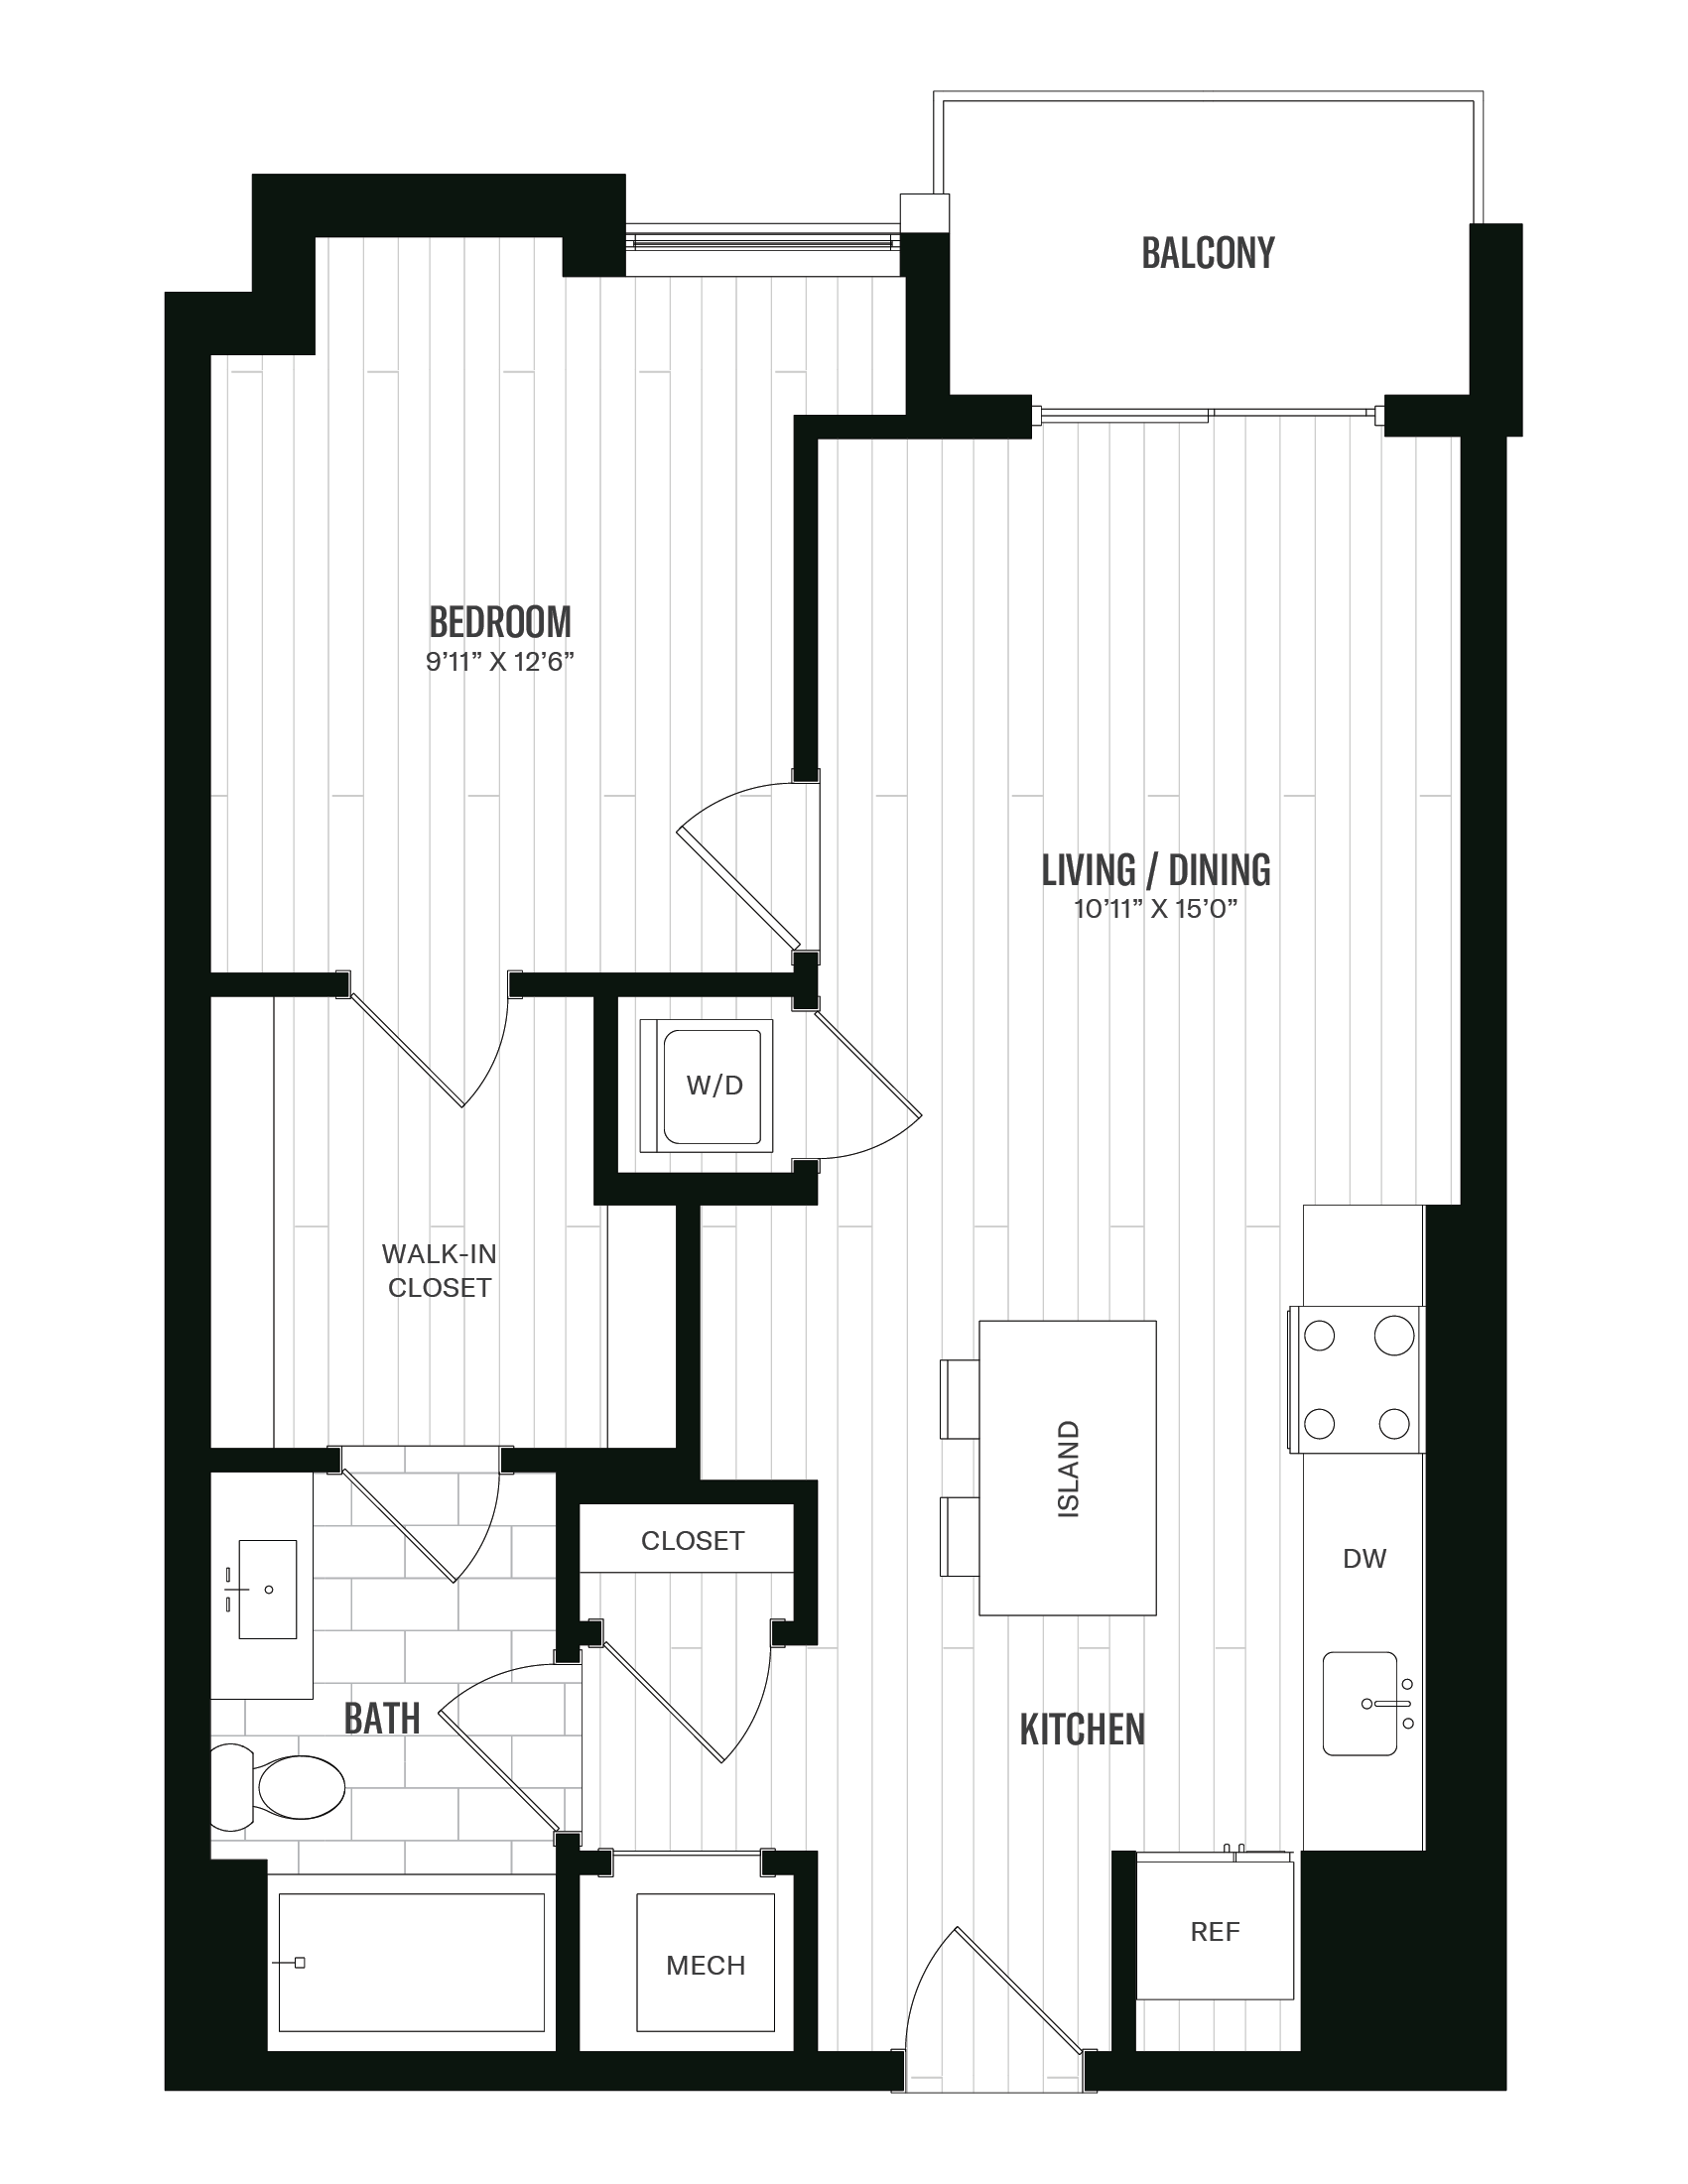 Floorplan image of unit 208